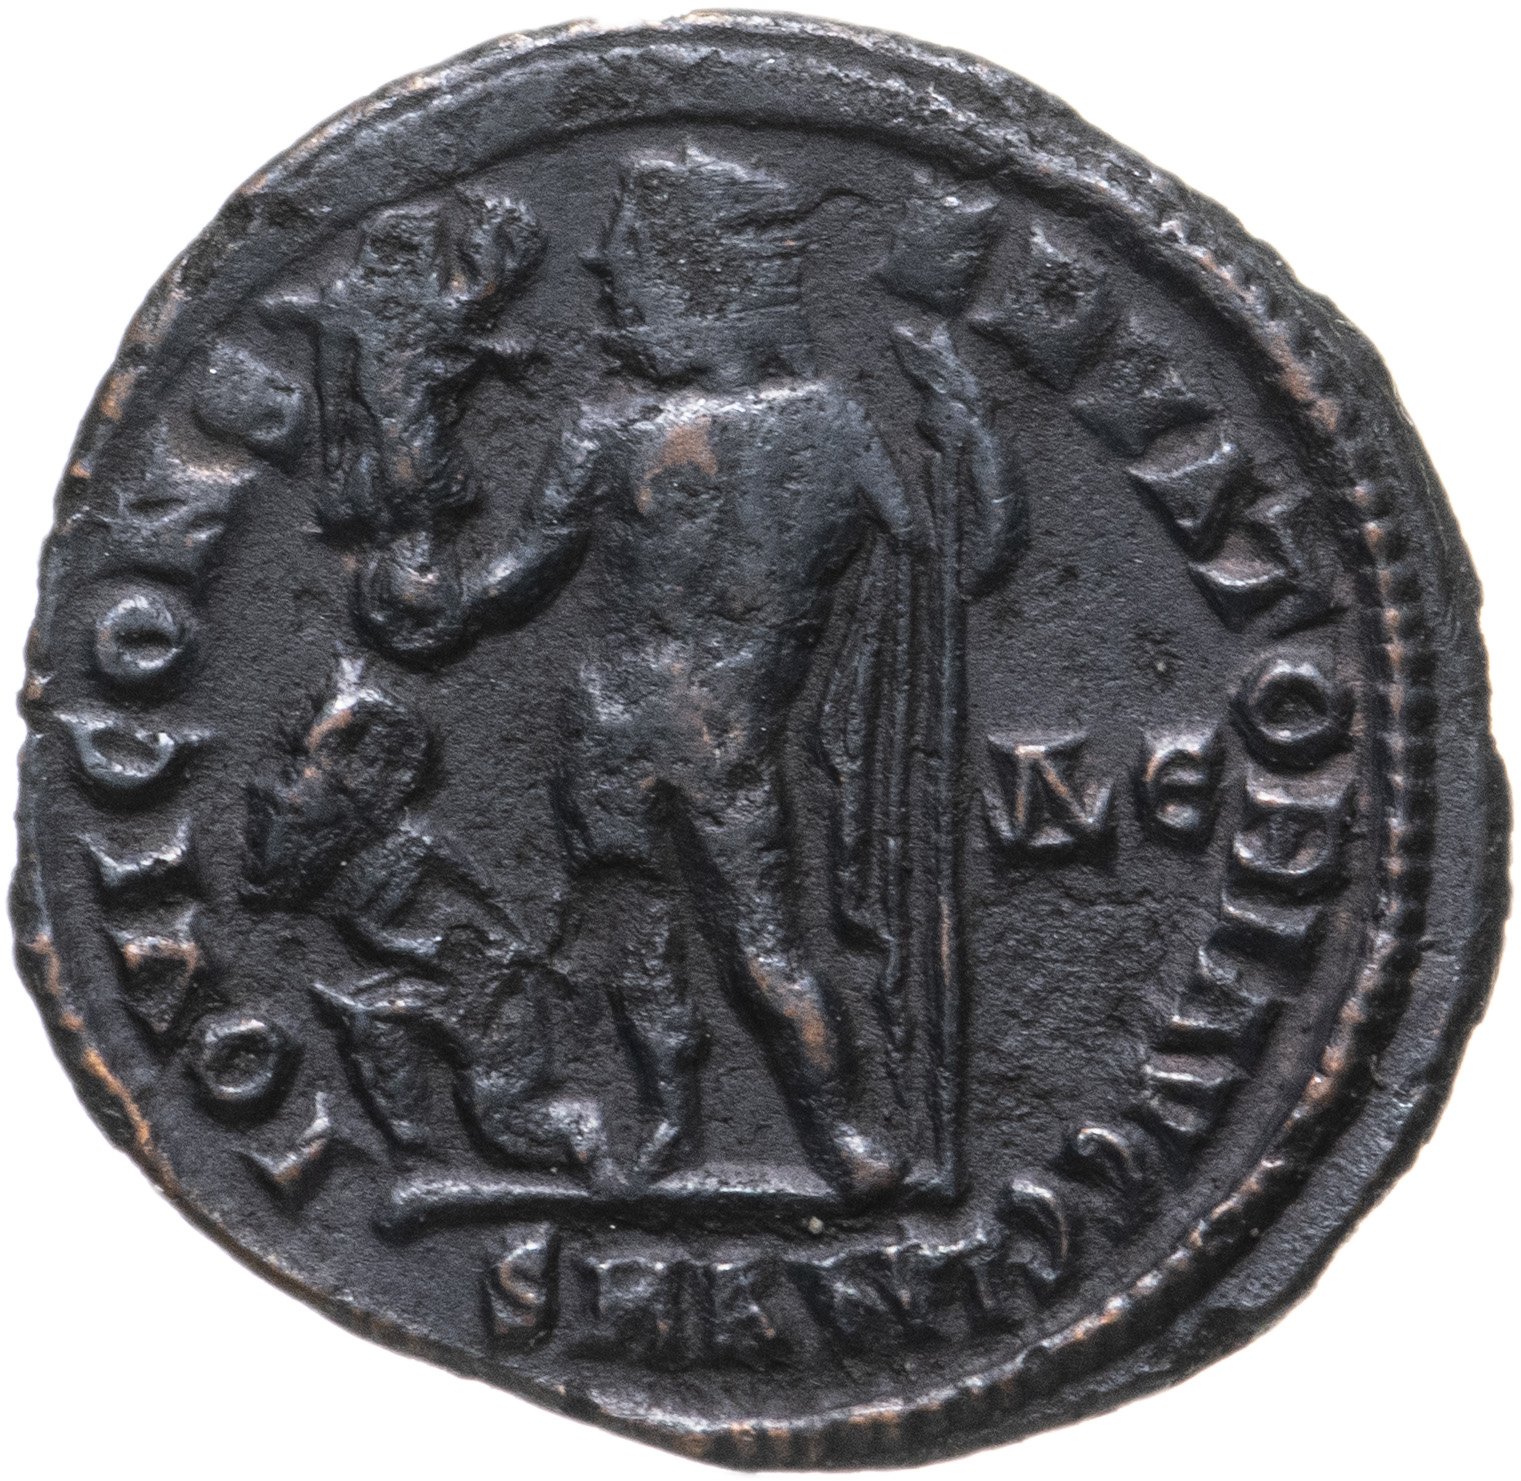 Квинт лициний 4. Римский фоллис Лициний i (265-324). Нуммий монета. АВЛ Лициний нерва Силиан монеты. Монеты Лициния.